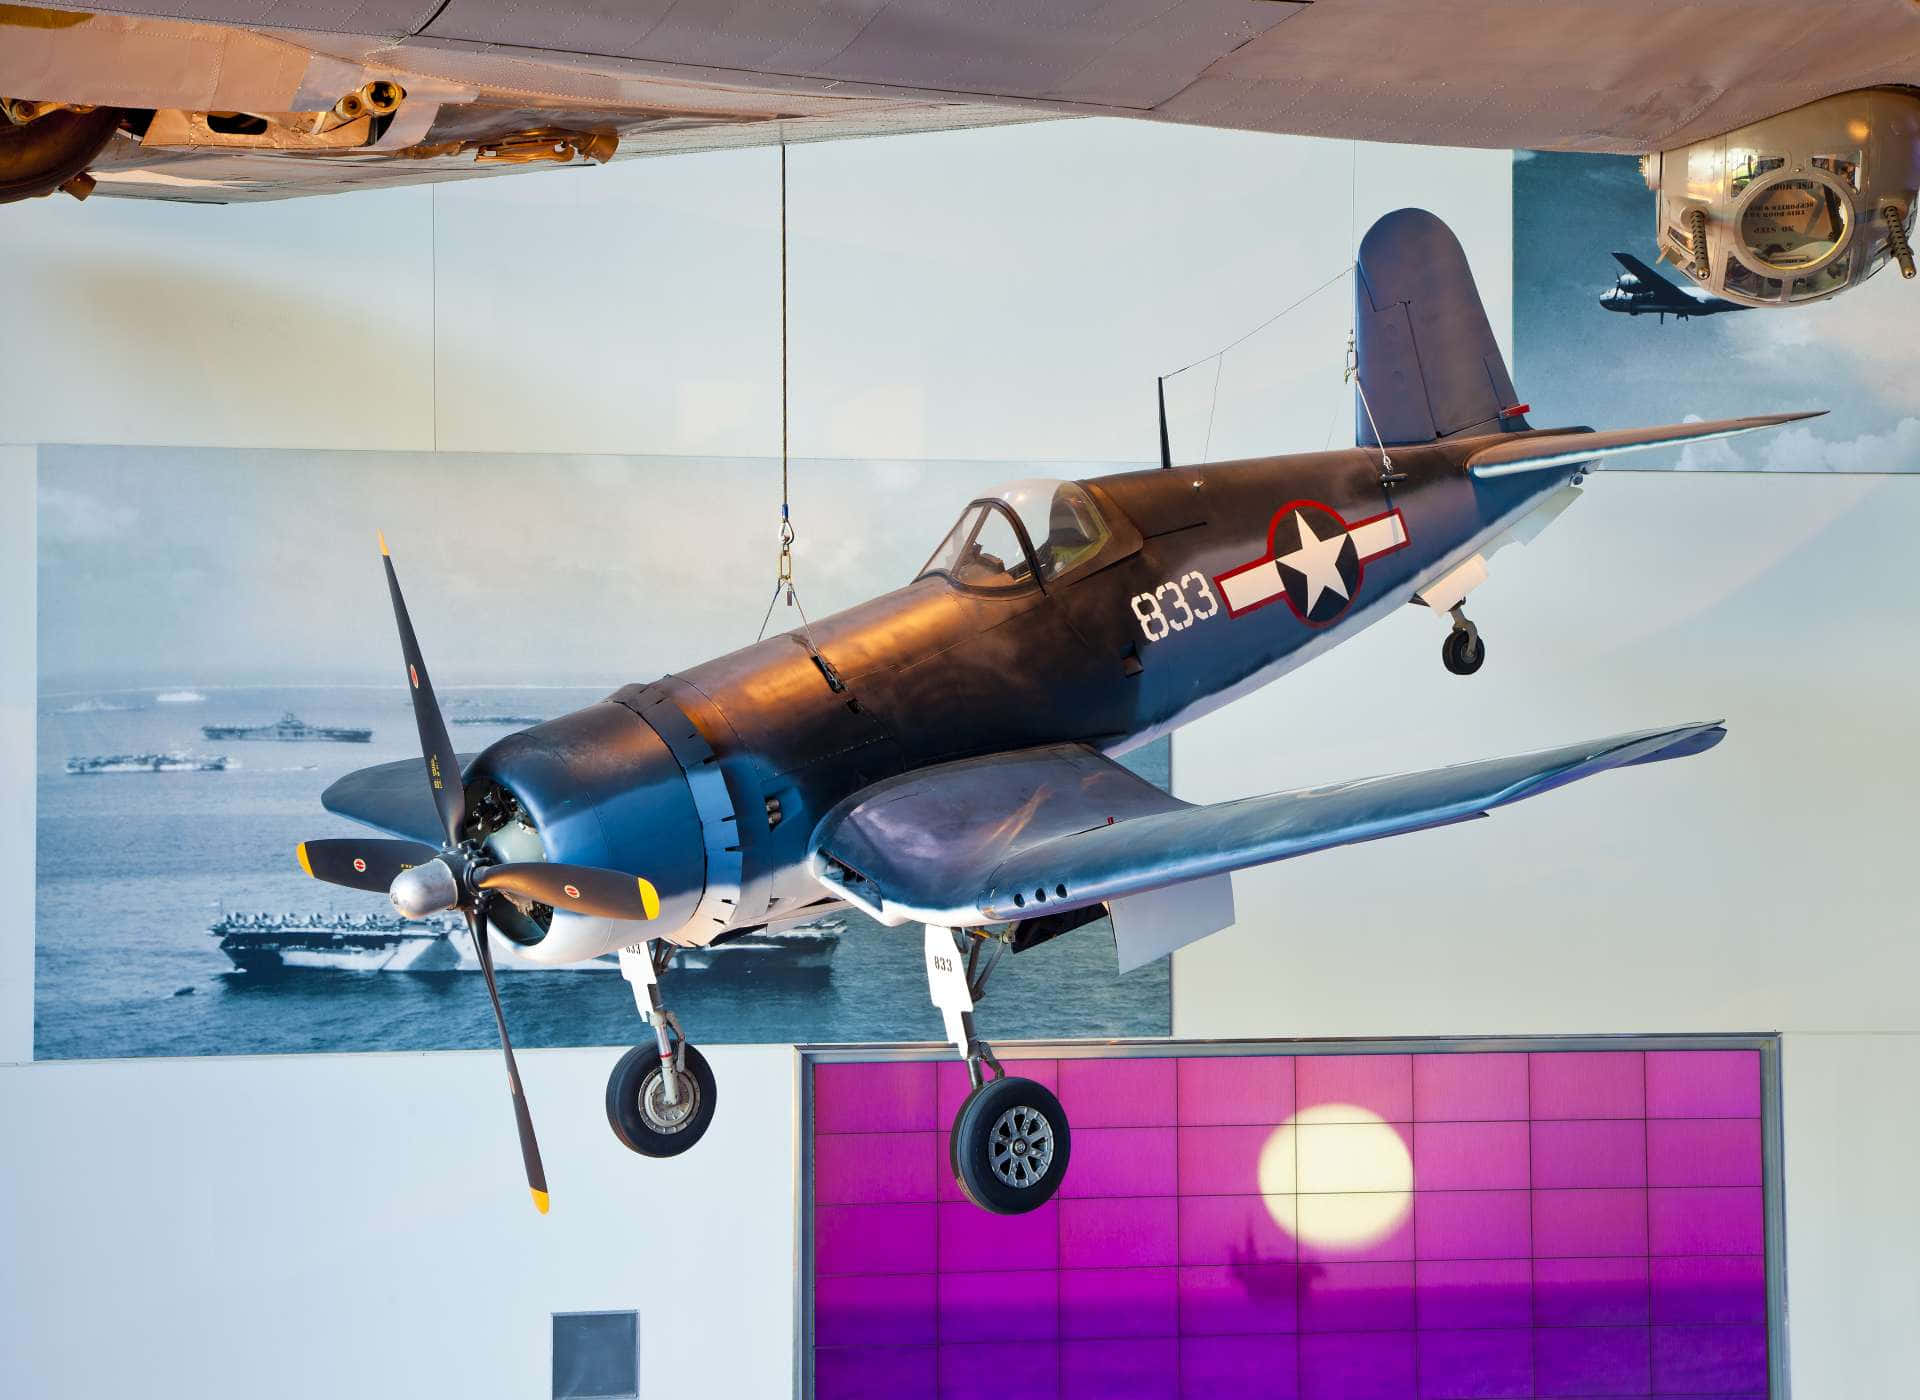 Einflugzeug, Das Von Der Decke In Einem Museum Hängt.